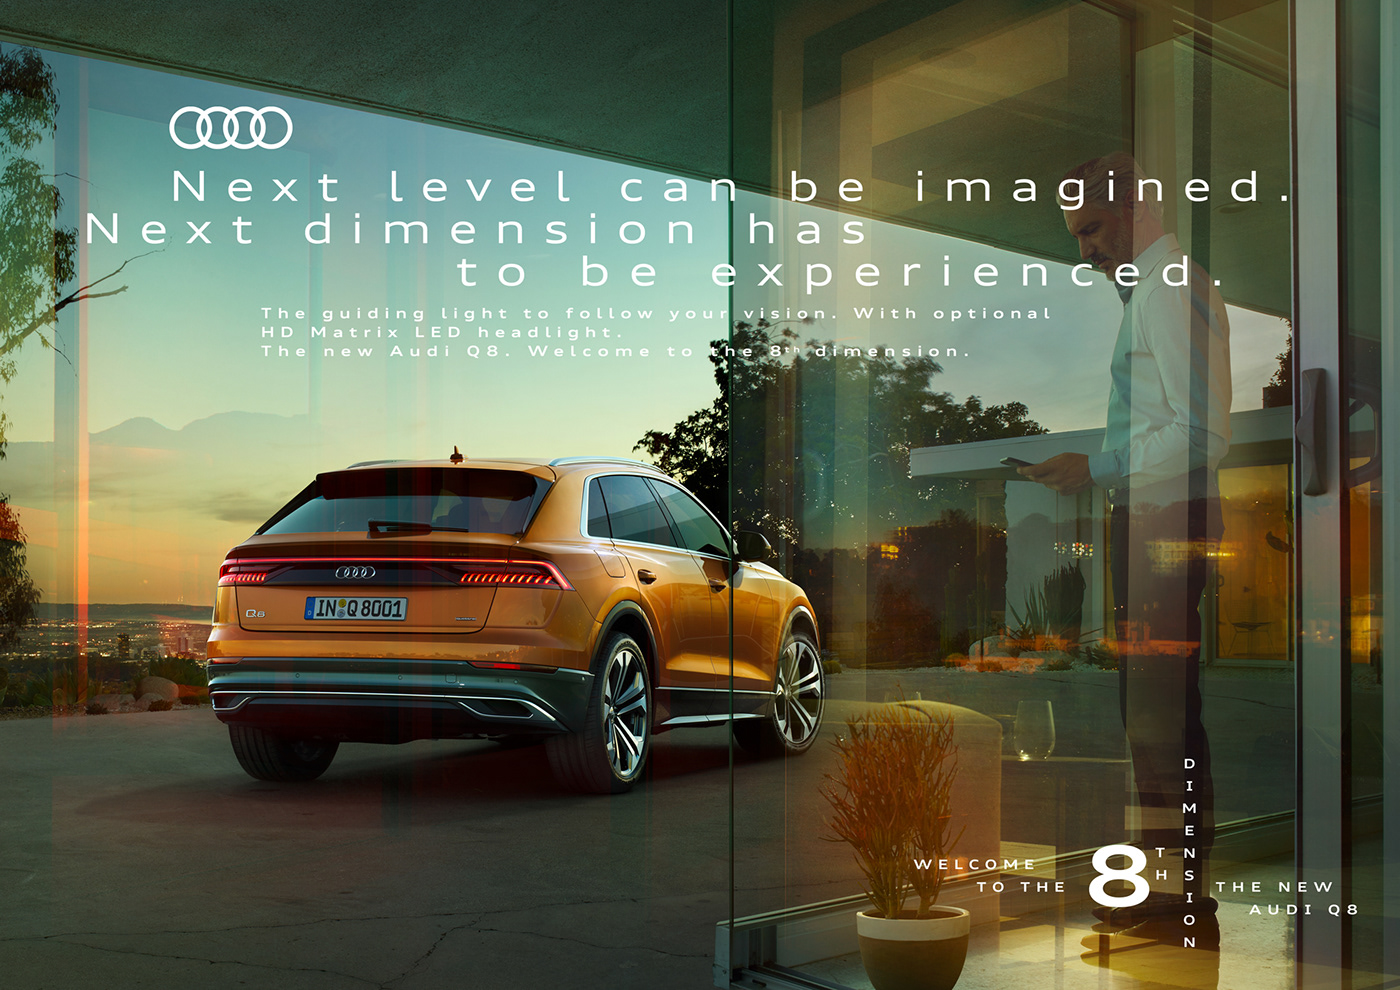 campaign transportation automotive   Audi Photography  Advertising  duettmann architecture Landscape luxury